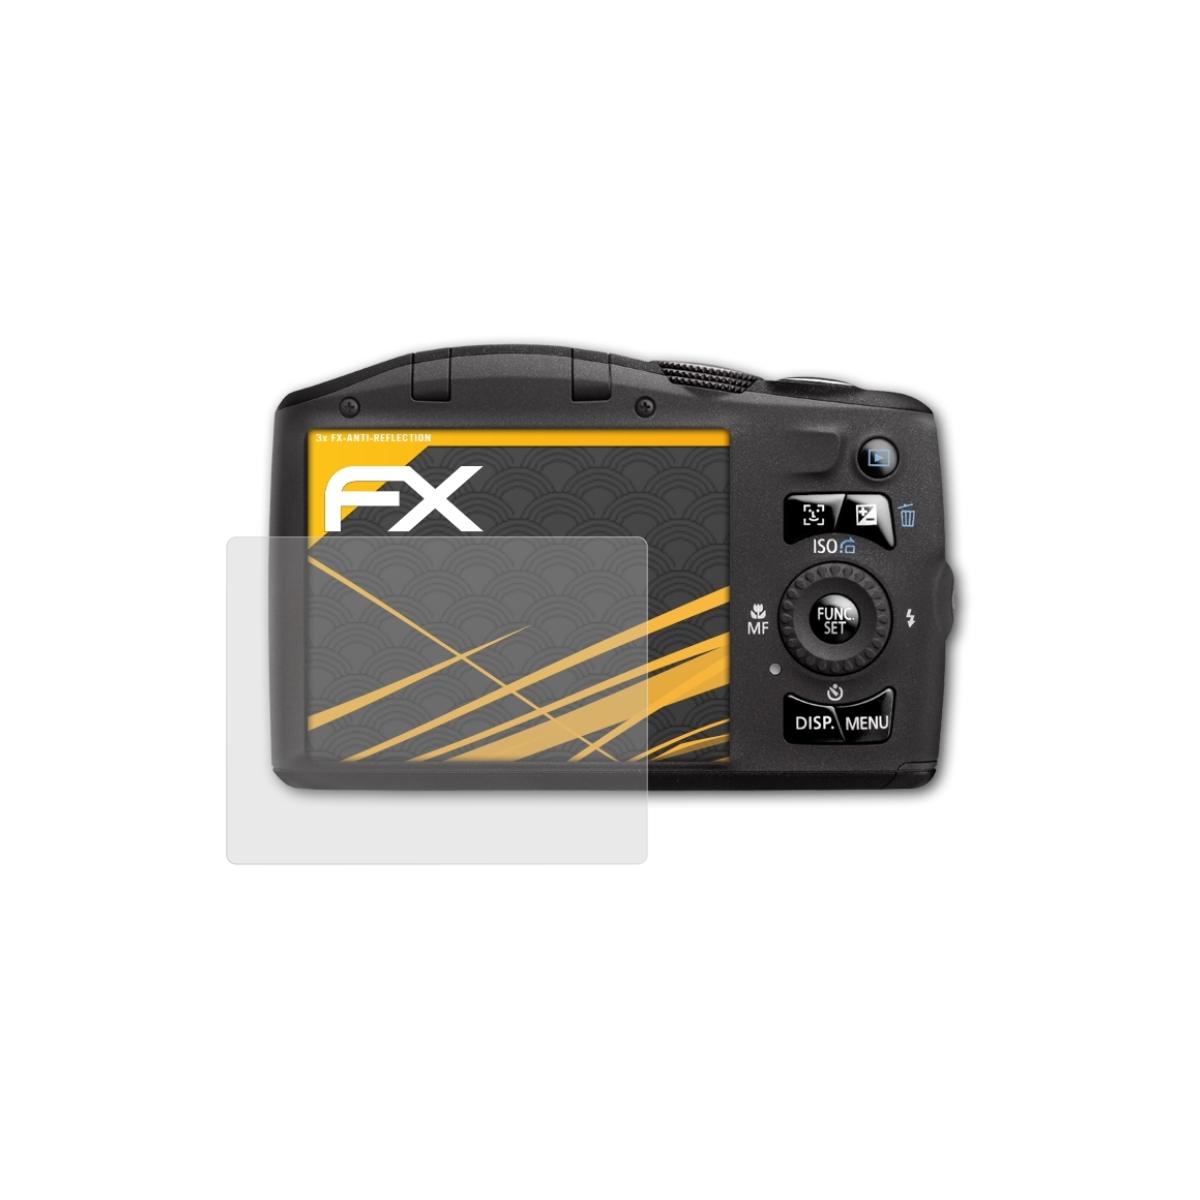 SX130 PowerShot Displayschutz(für Canon ATFOLIX 3x FX-Antireflex IS)